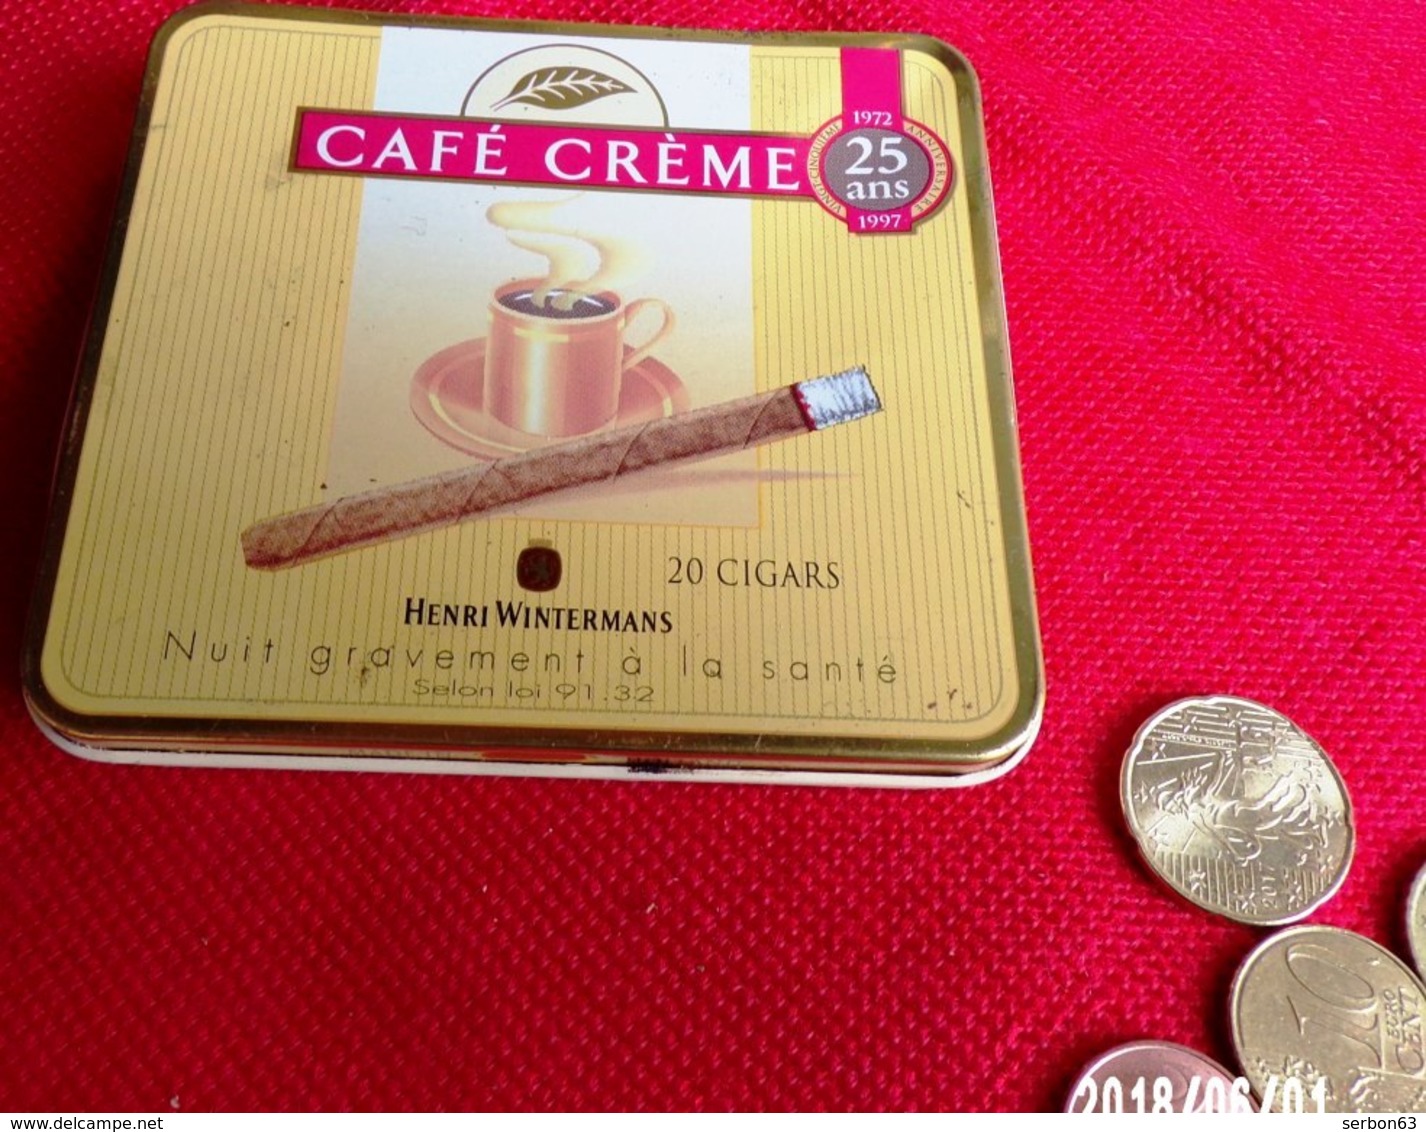 CAFÉ CRÈME 1972/1997 - BOITE MÉTALLIQUE USAGÉE PUBLICITAIRE 20 HENRI WINTERMANS CIGARES VIDE TABAC PUBLICITÉ - Serbon63 - Empty Tobacco Boxes